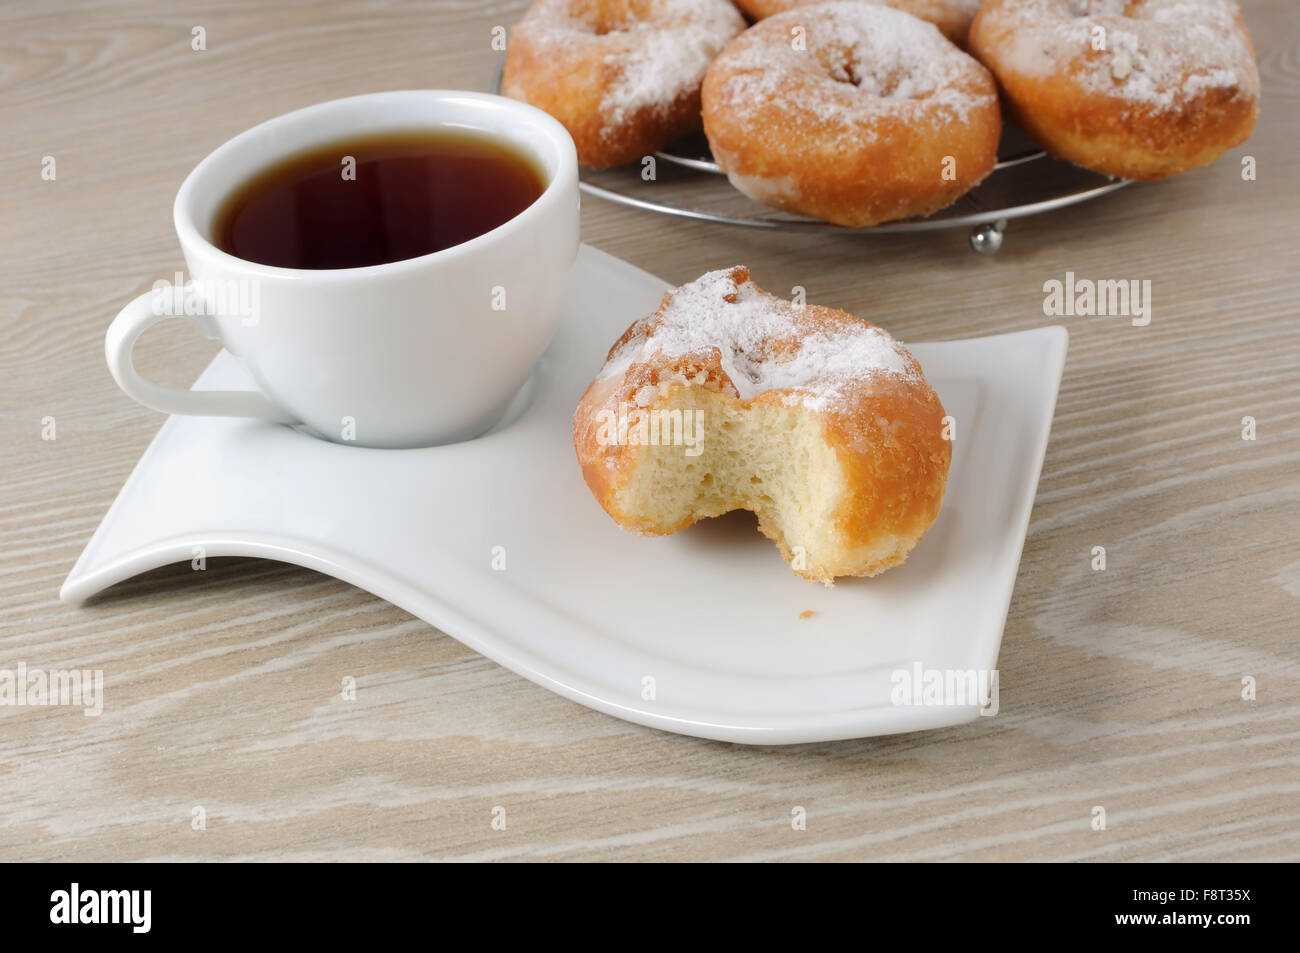 Une tasse de café et beigne mordu dans le sucre en poudre sur une assiette Banque D'Images